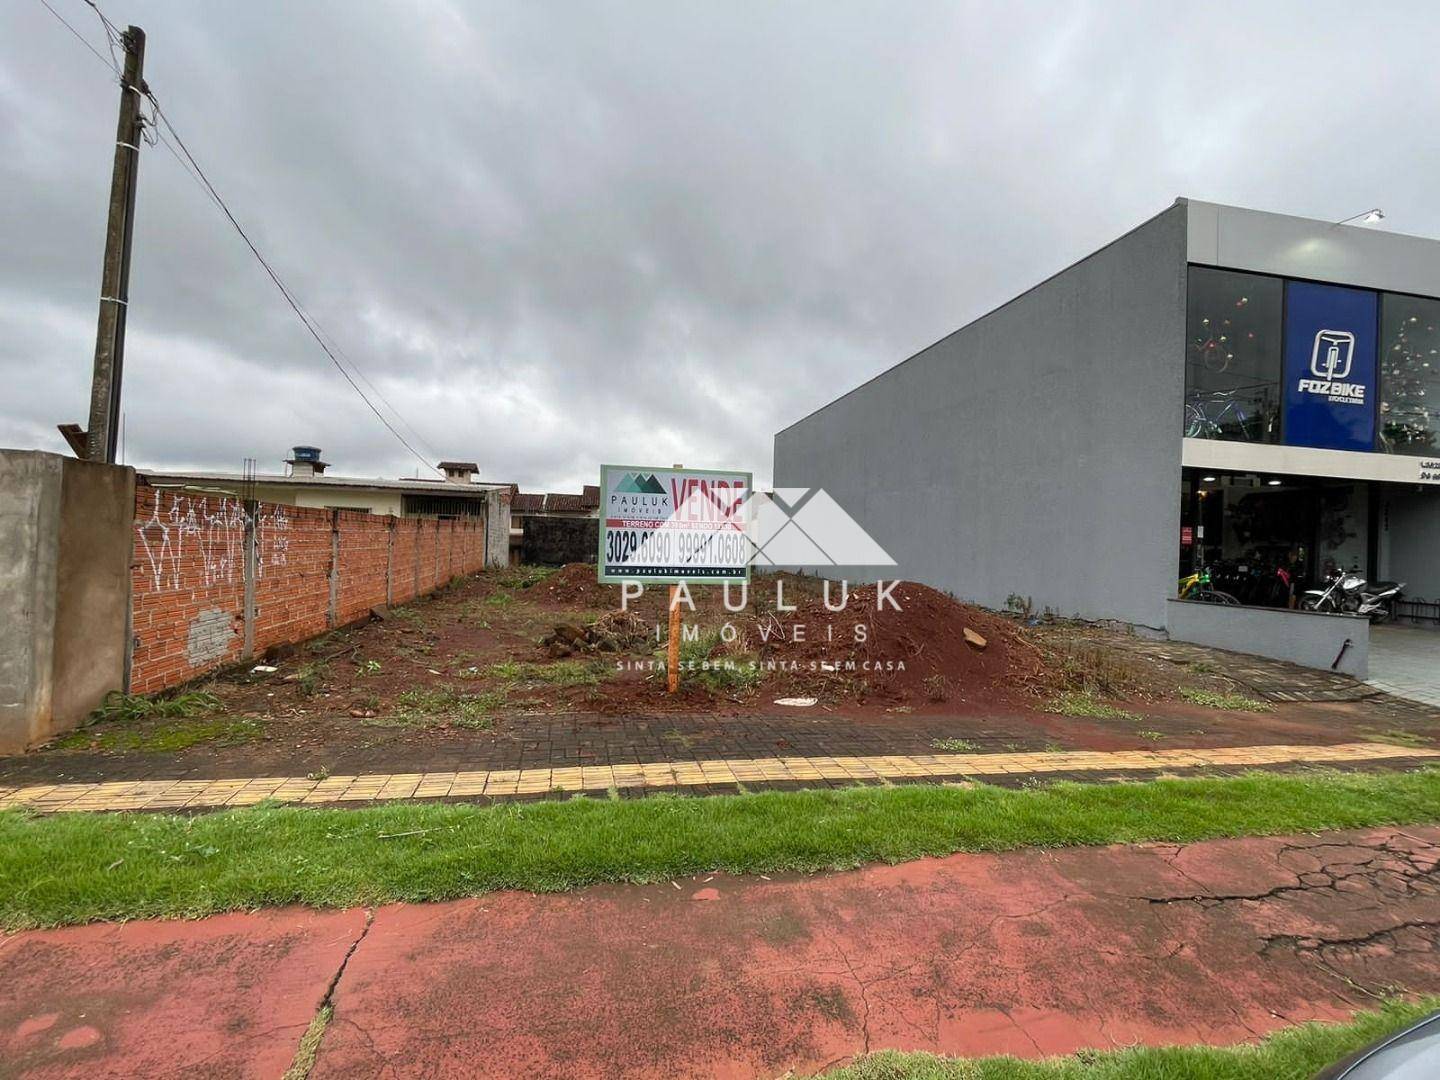 Terreno no Centro em Curitiba / PR, 390m² para Venda por R$ 1.500.000,00